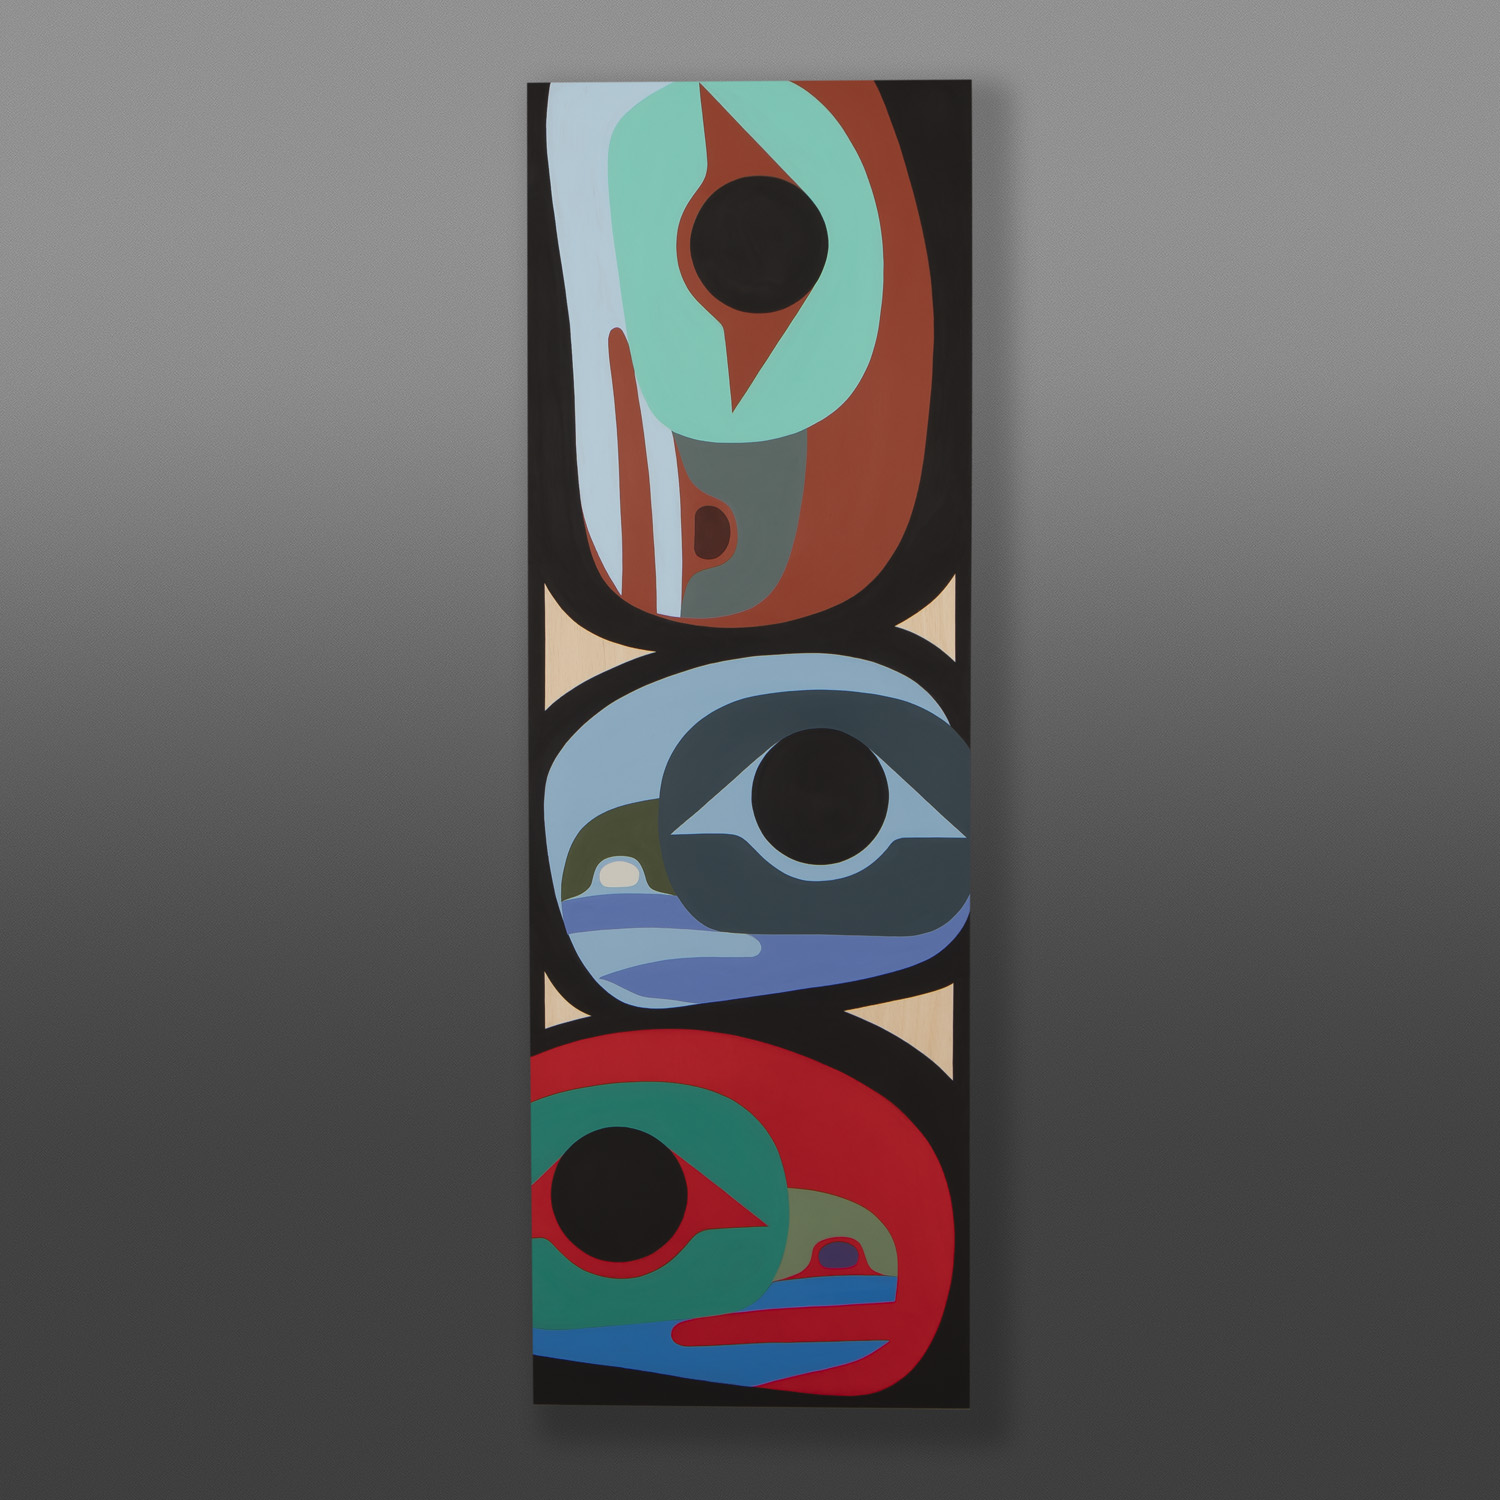 Raven Family
Steve Smith - Dla'kwagila
Oweekeno
Acrylic on birch panel
36" x 12" x 1½"
$1700